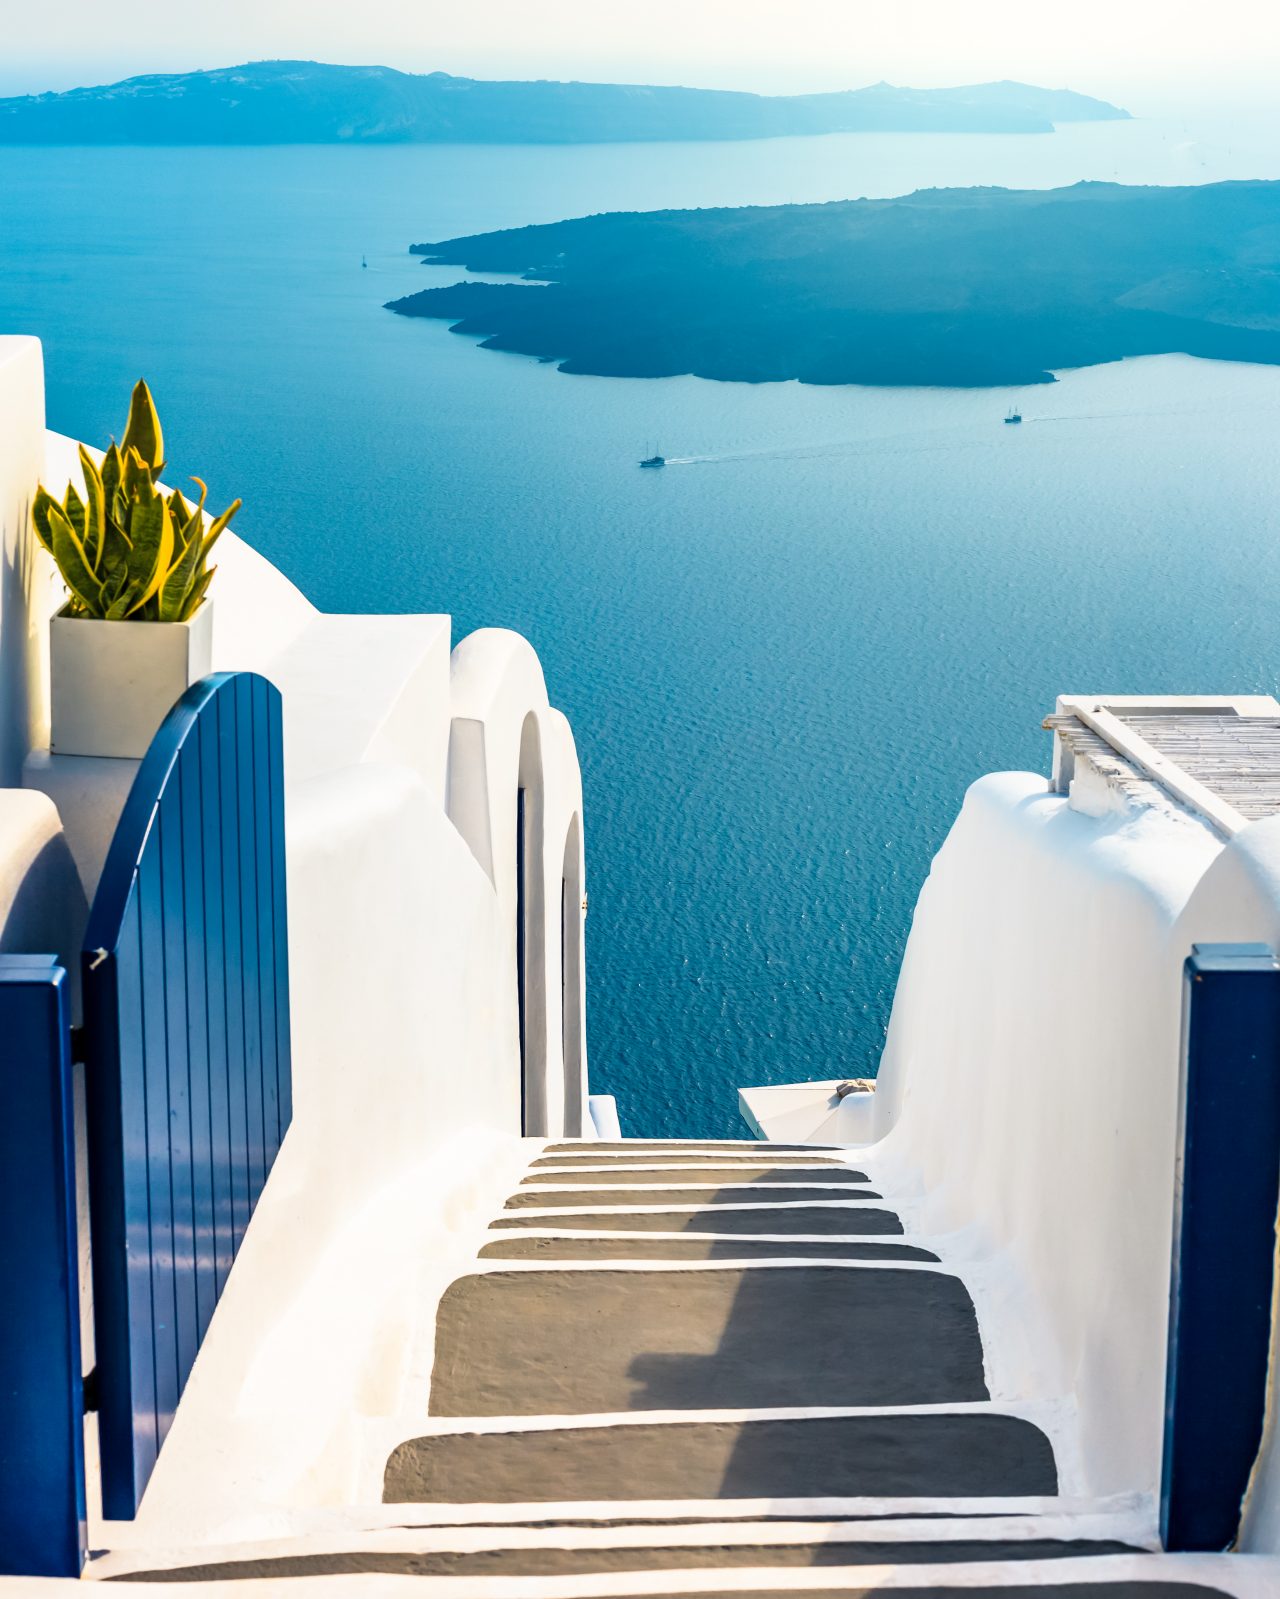 Το απέραντο γαλάζιο της Σαντορίνης, το παραδοσιακό νησί της Ελλάδας για διακοπές πολυτελείας